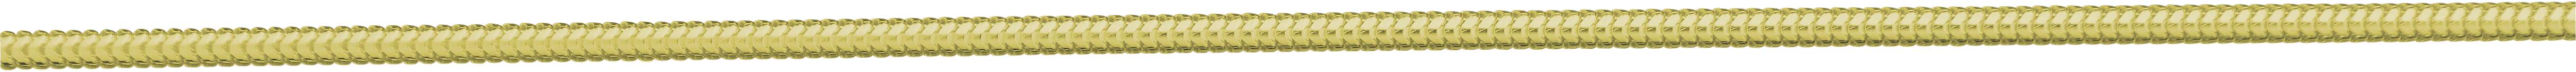 slangenketting goud 750/-gg Ø 1,60mm